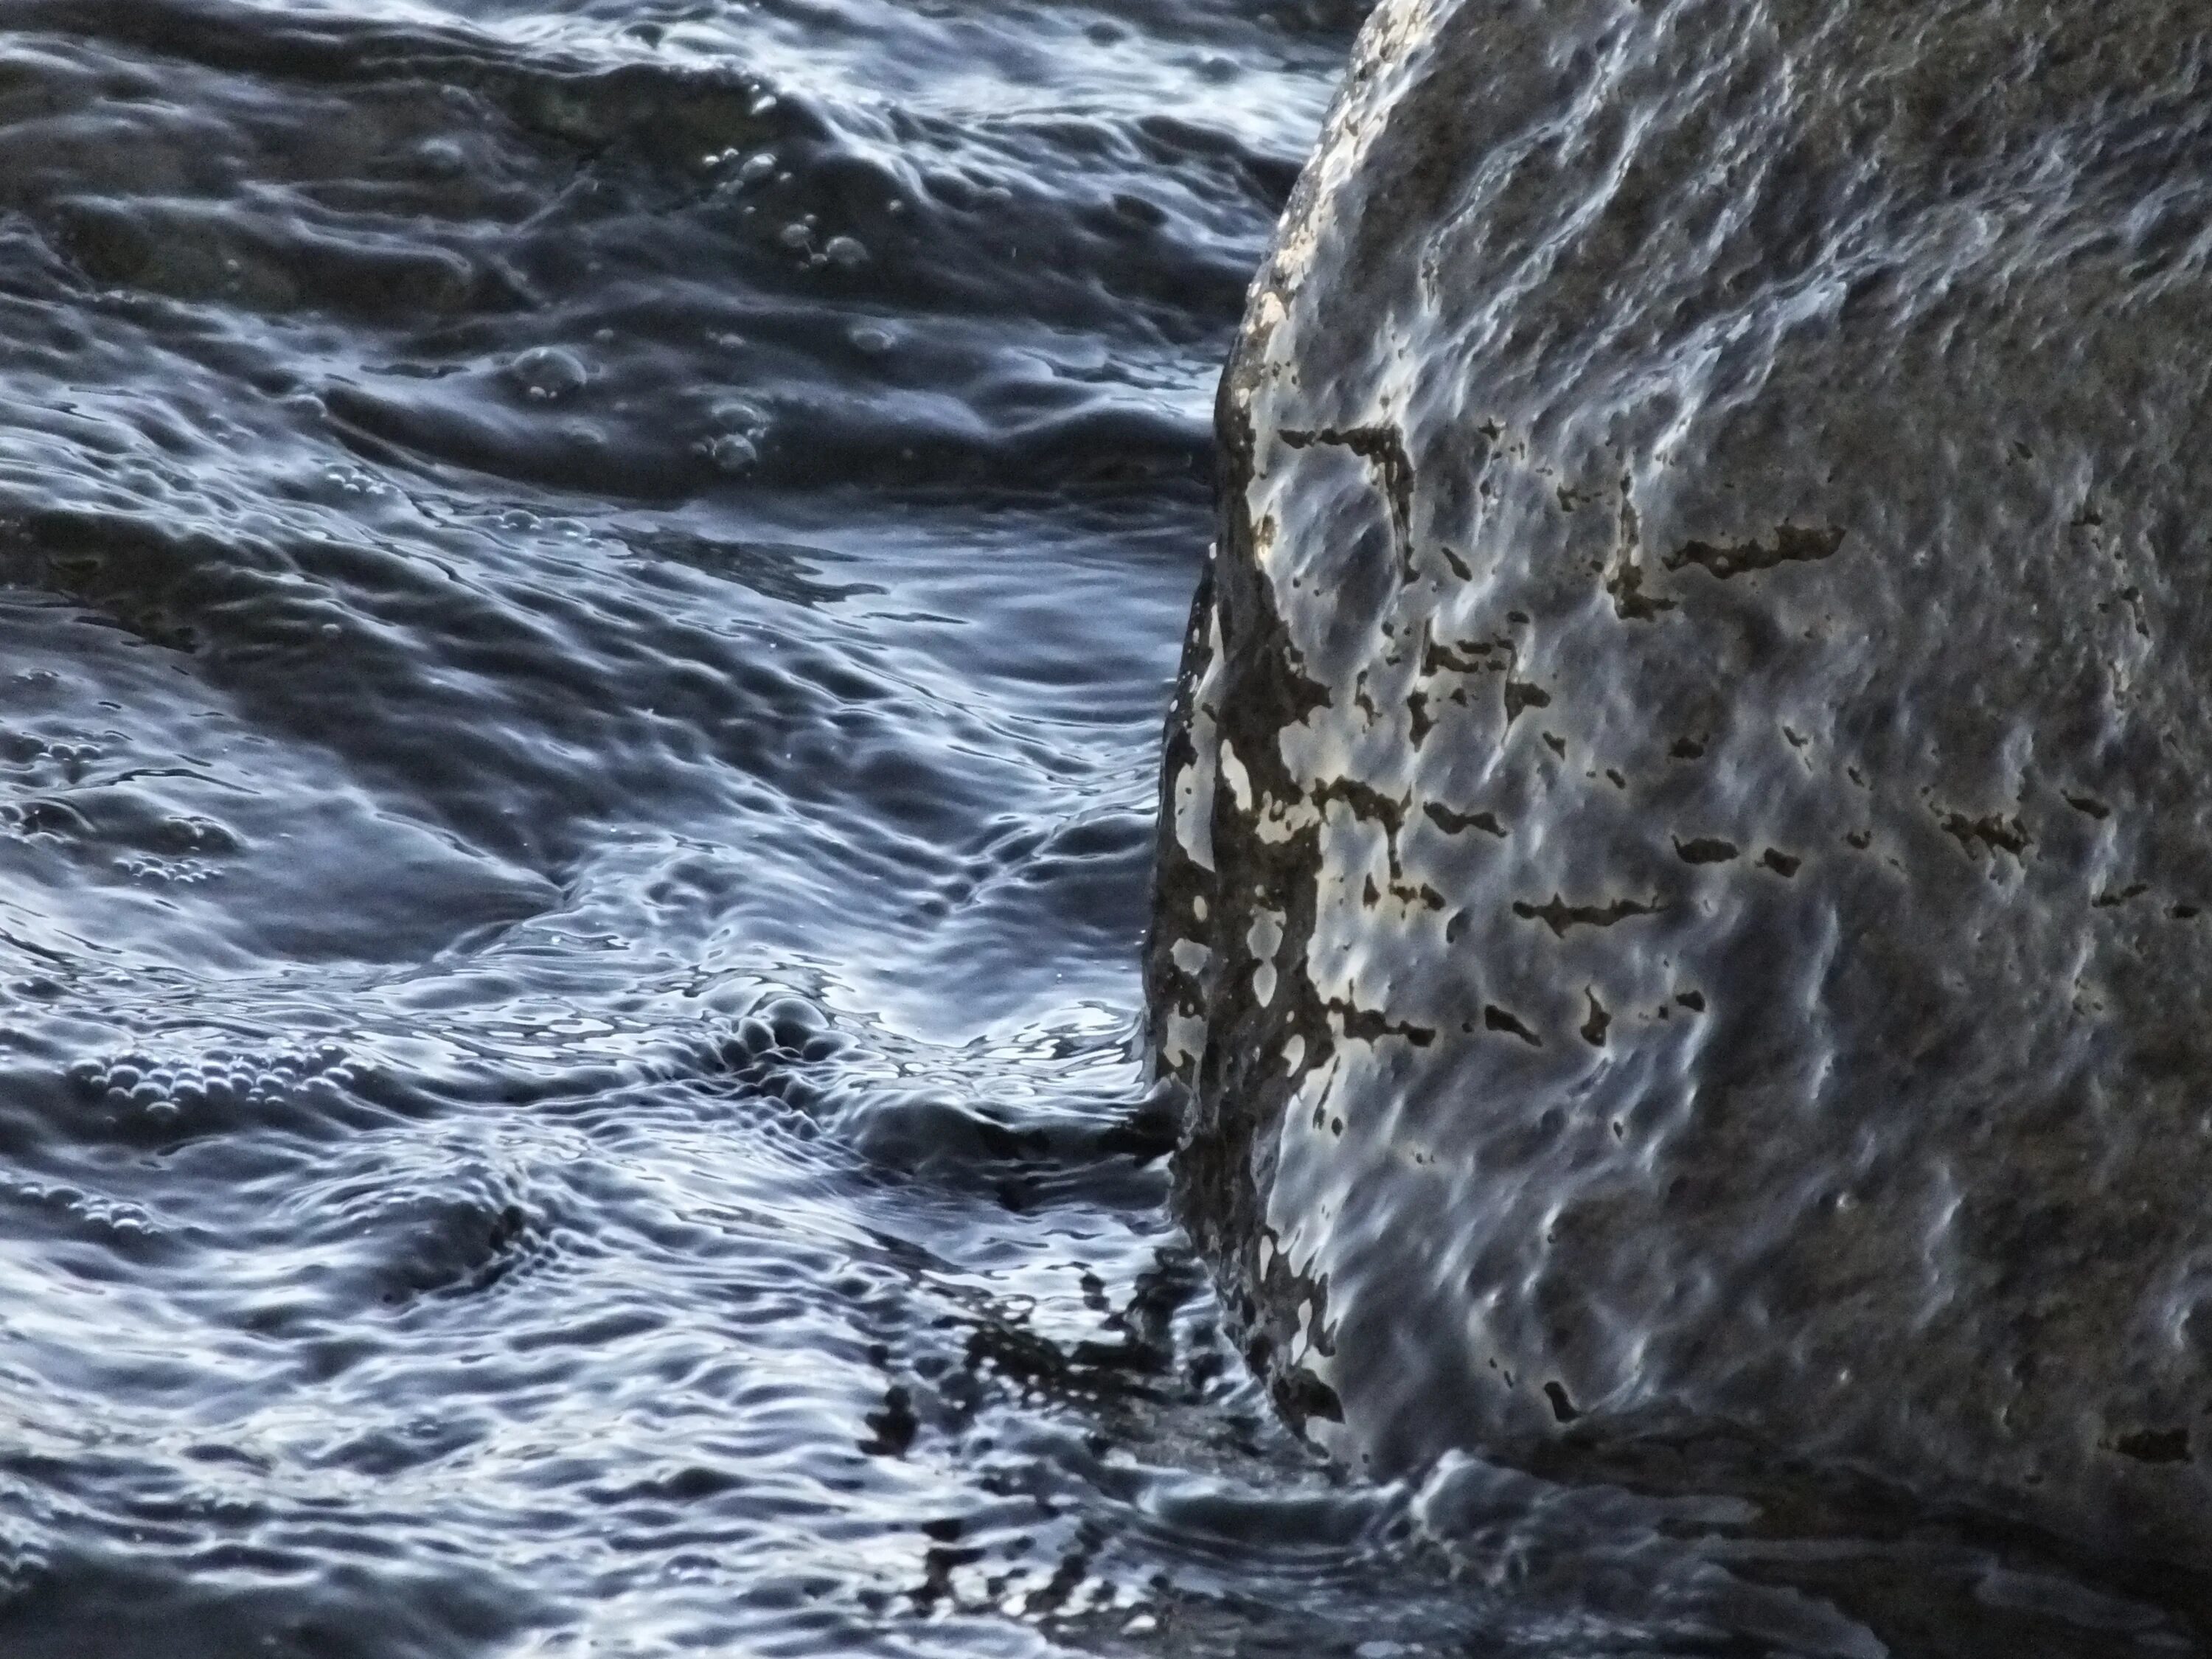 Камень с потоками воды. Вода камень точит. Море точит камни. Поток воды голубой камни. Почему вода камень точит